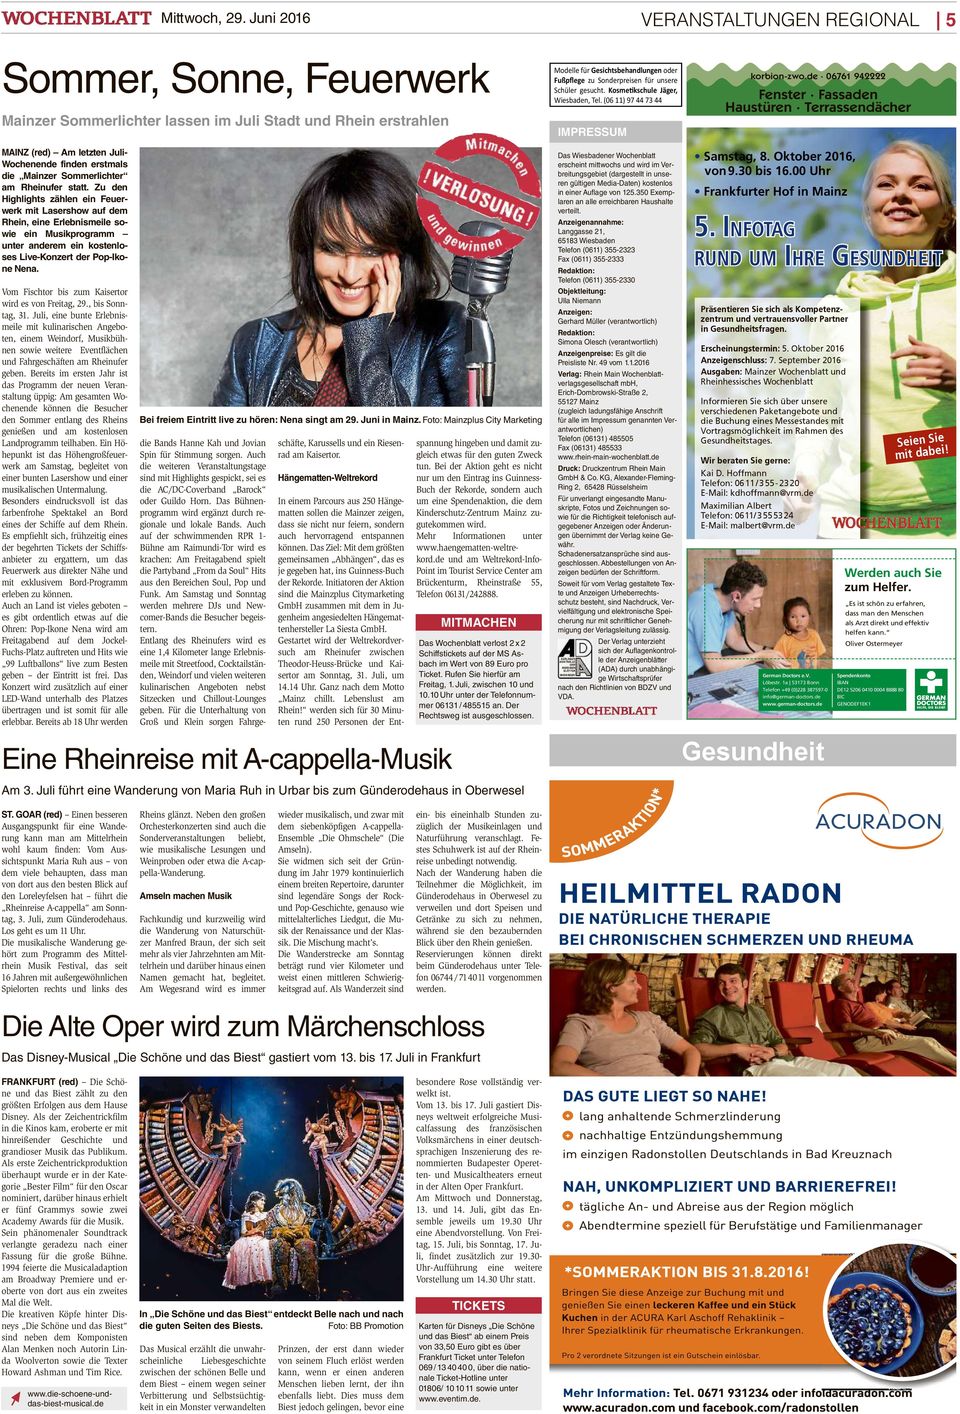 Schüler gesucht. Kosmetikschule Jäger,, Tel. (06 11) 97 44 73 44 IMPRESSUM MAINZ (red) Am letzten Juli- Wochenende finden erstmals die Mainzer Sommerlichter am Rheinufer statt.